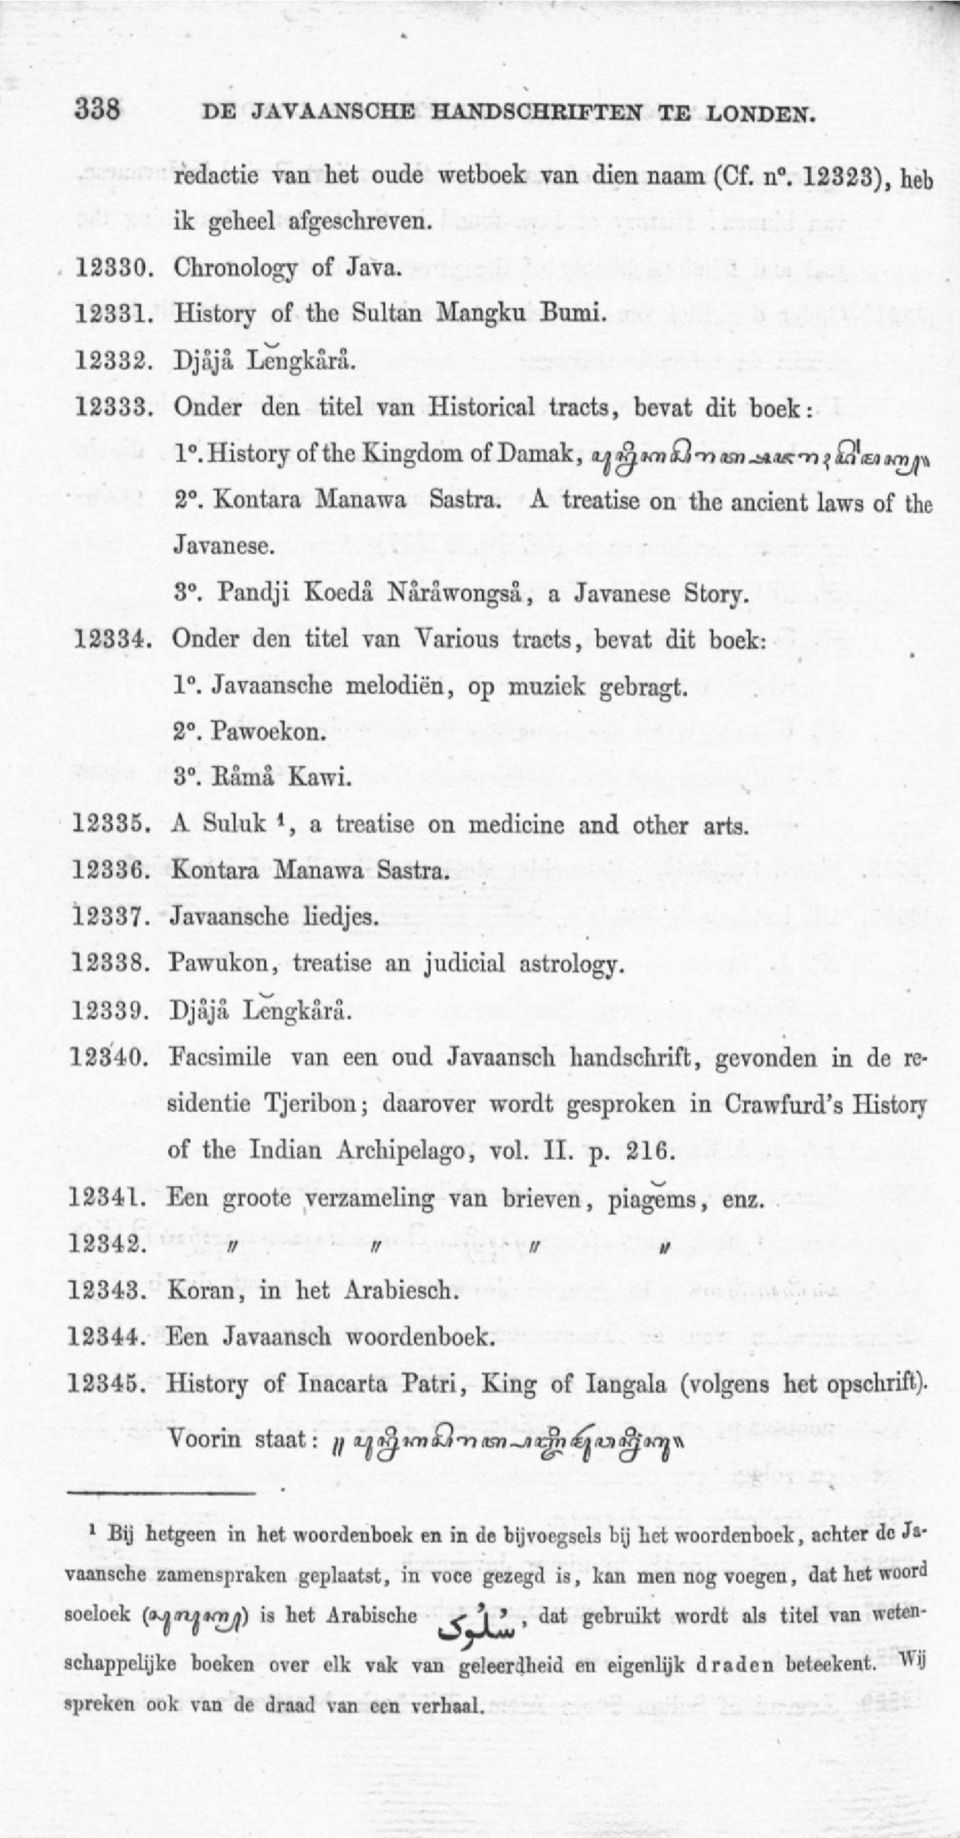 A treatise on the ancient laws of the Javanese. 3. Pandji Koeda Narawongsa, a Javanese Story. 12334. Onder den titel van Various tracts, bevat dit boek: 1. Javaansche melodiè'n, op muziek gebragt. 2.